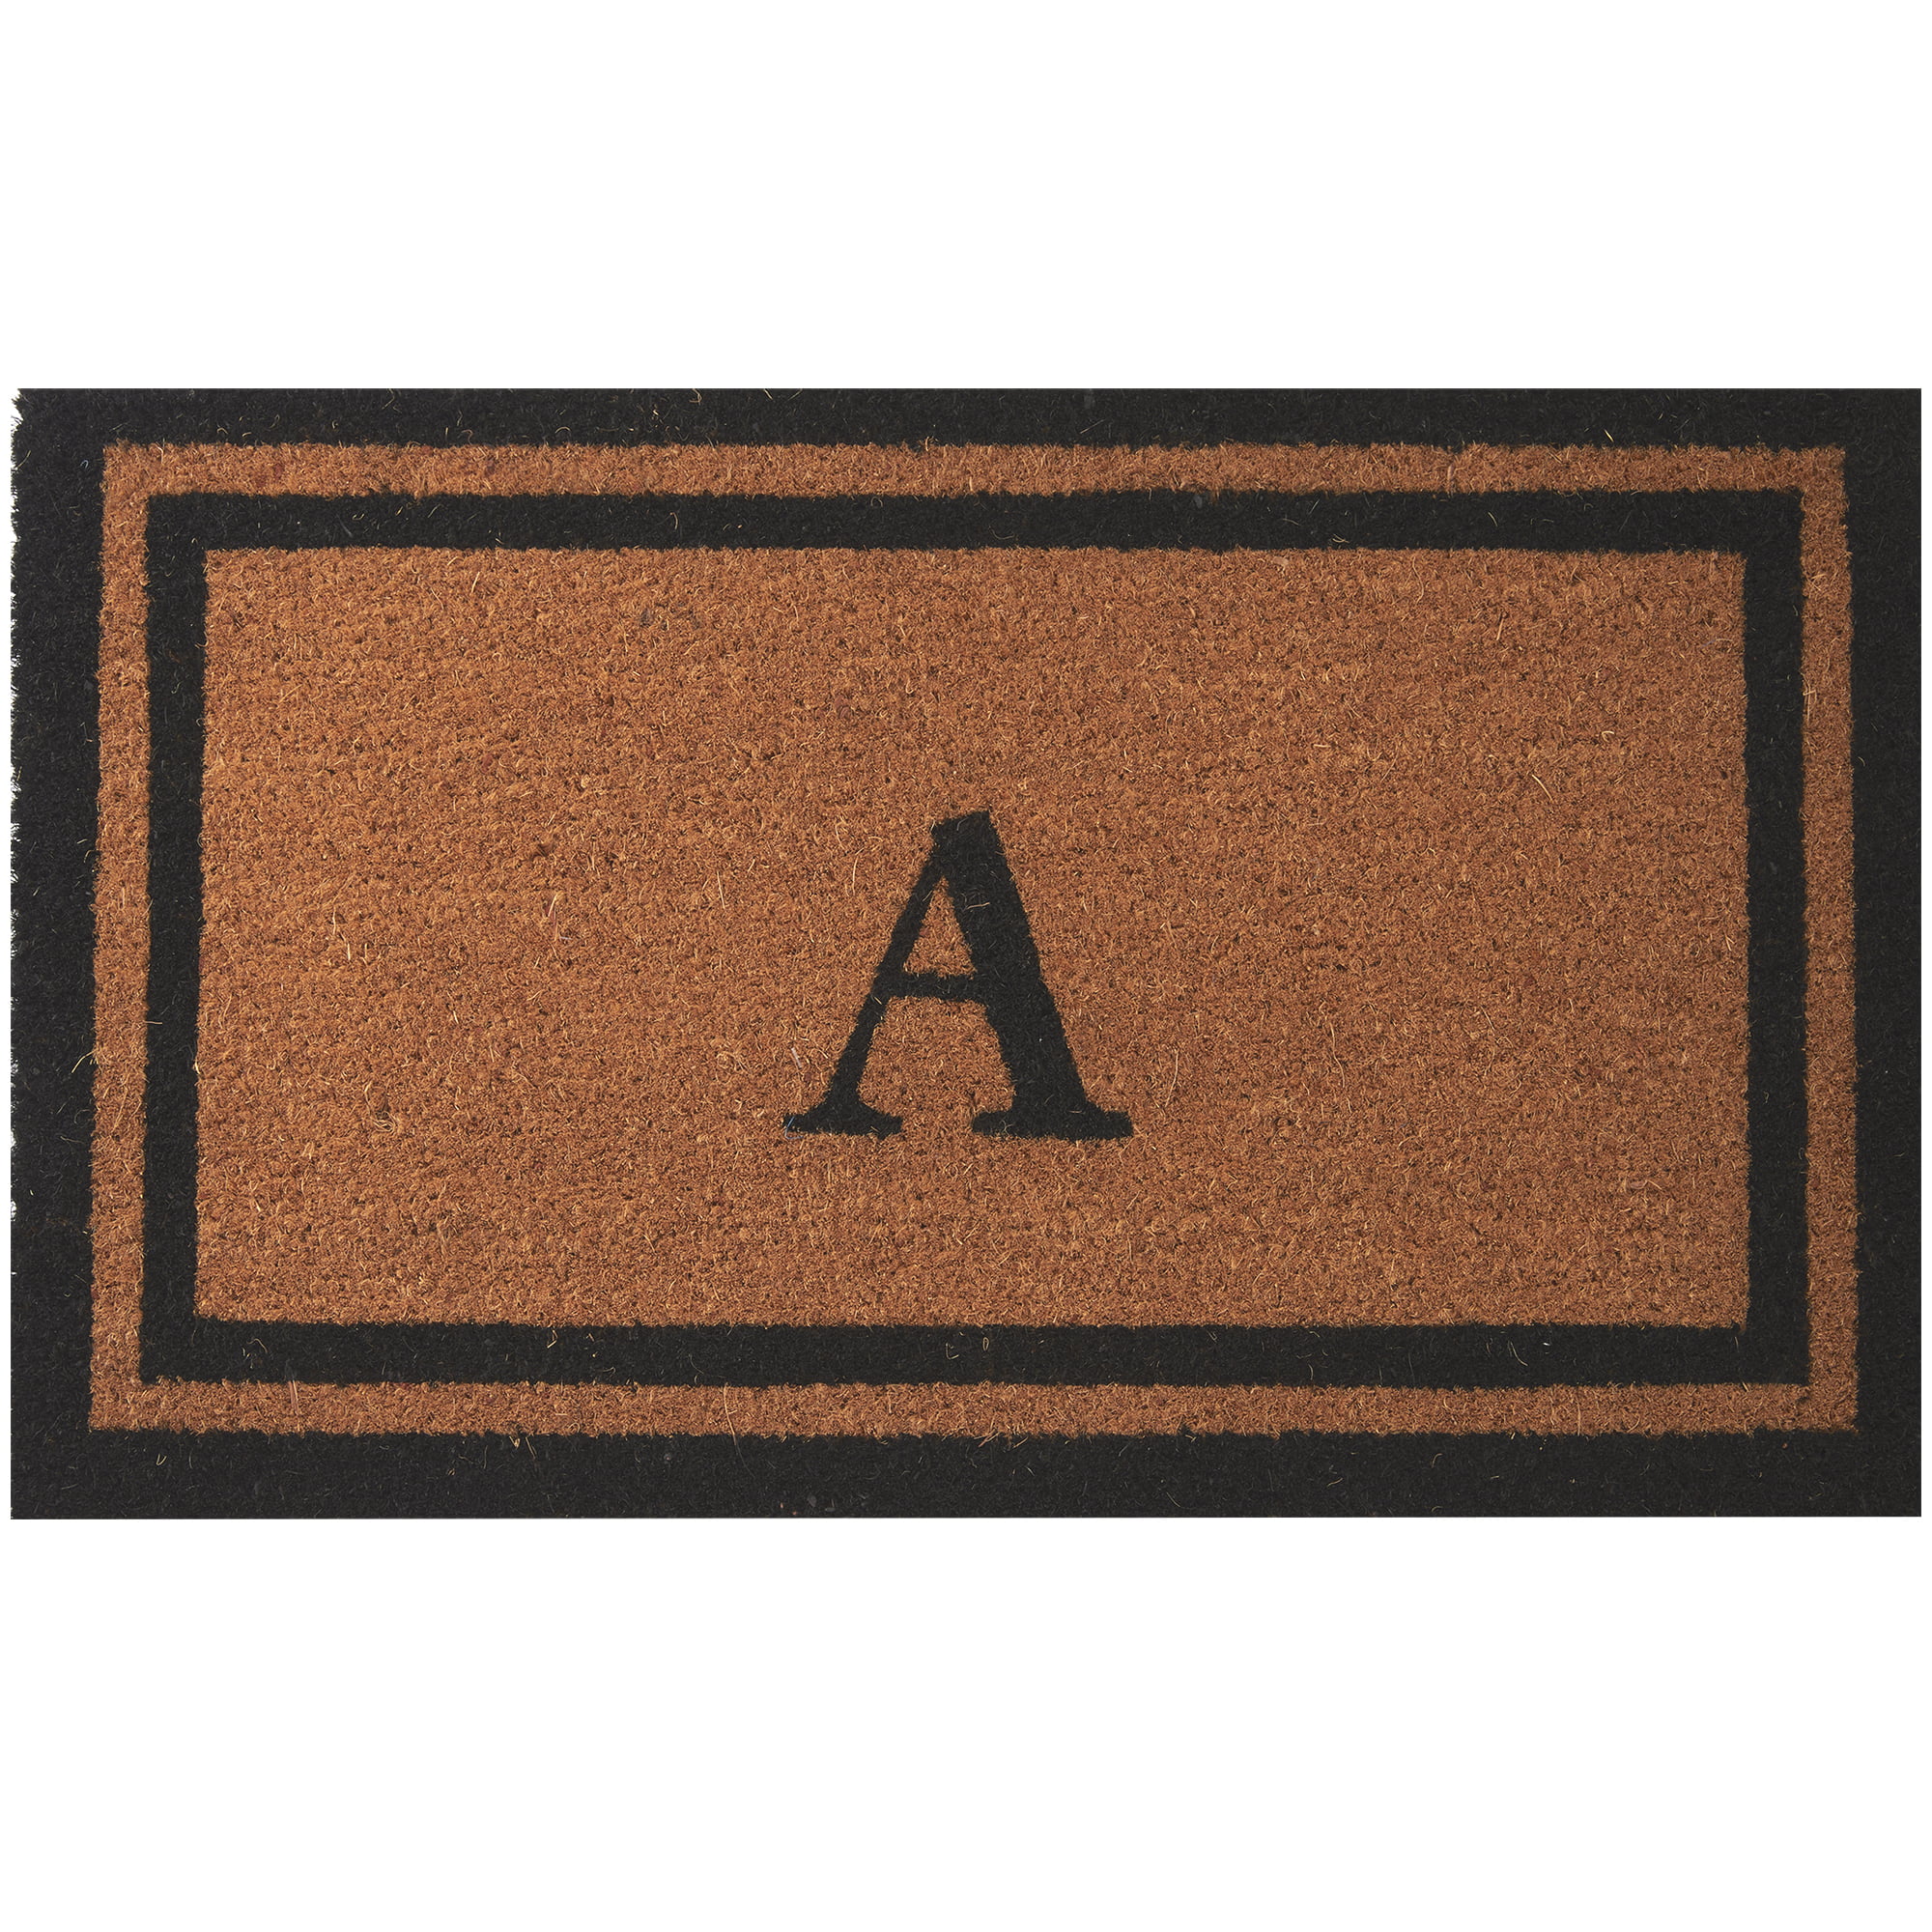 Envelor Home and Garden Customized Monogram A Coir Doormat Coco Mat Outdoor Rugs Non